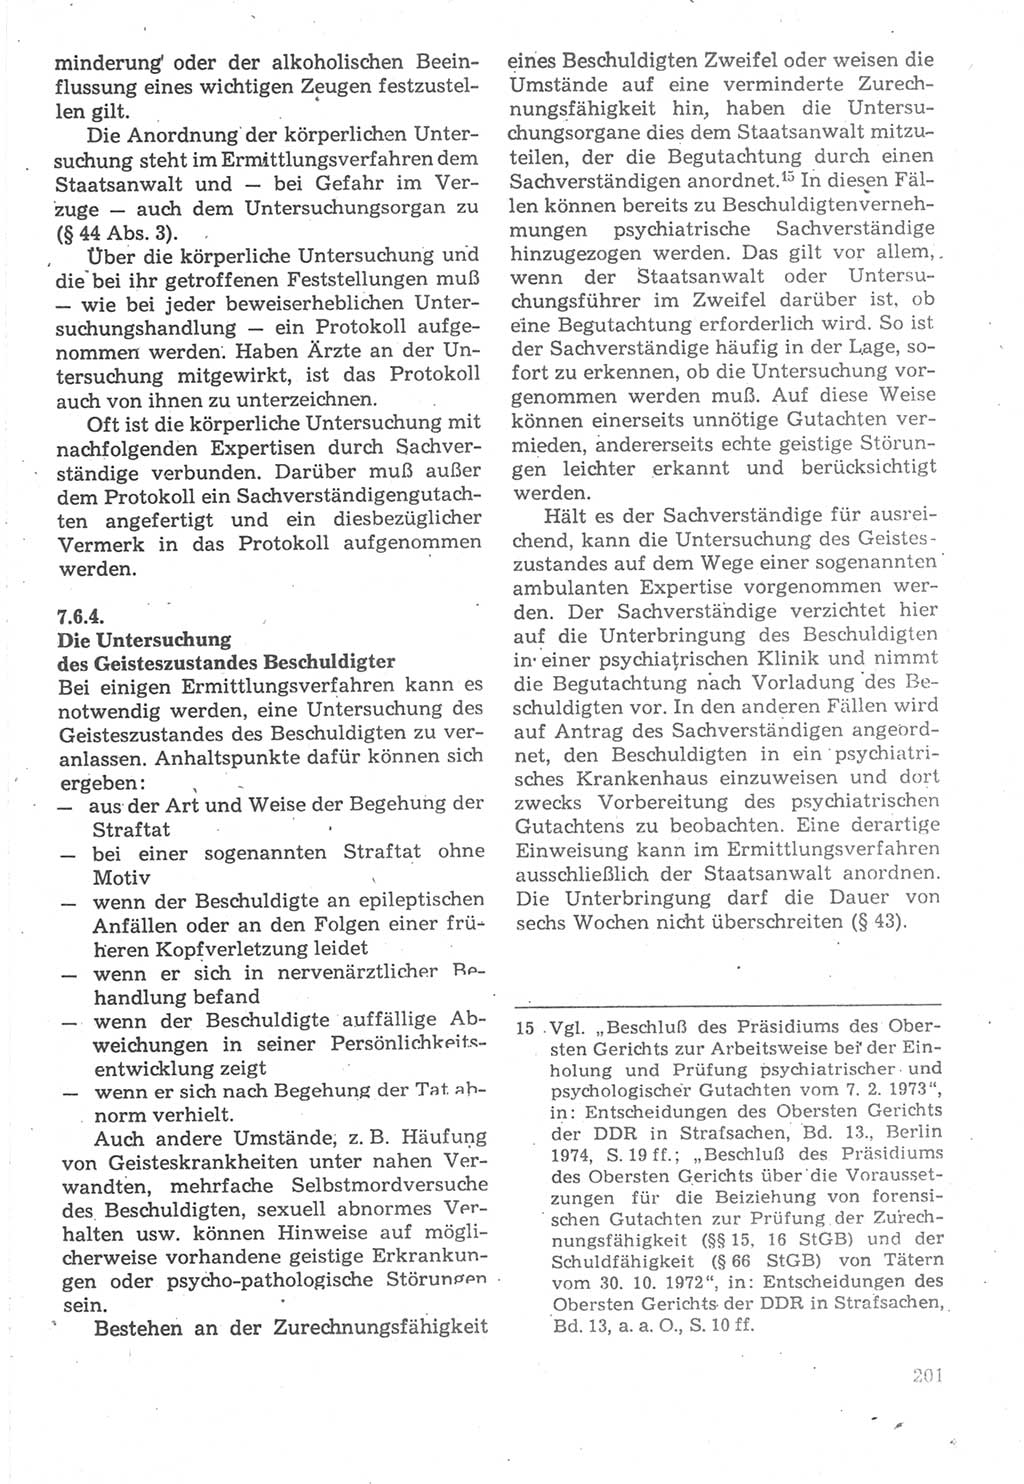 Strafverfahrensrecht [Deutsche Demokratische Republik (DDR)], Lehrbuch 1987, Seite 201 (Strafverf.-R. DDR Lb. 1987, S. 201)